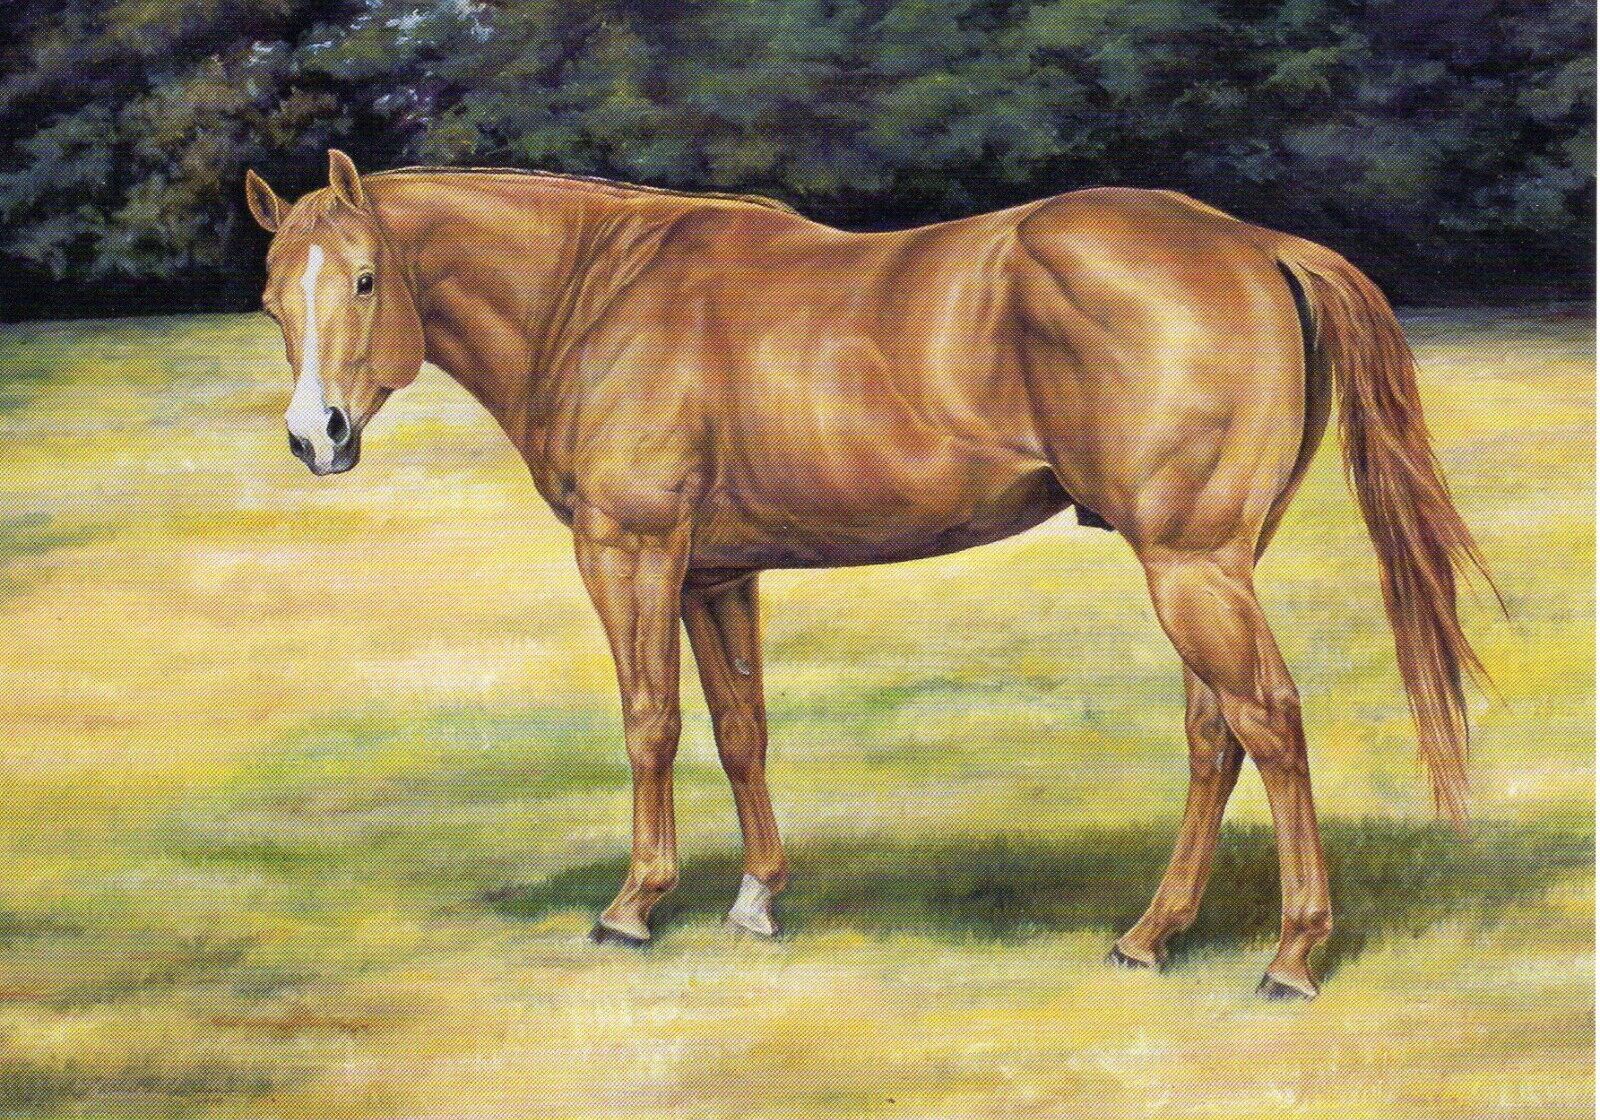 DEL RIO JOE DUDE Quarter Horse Postcard Art by Lachelle Currin 4.25 x 6